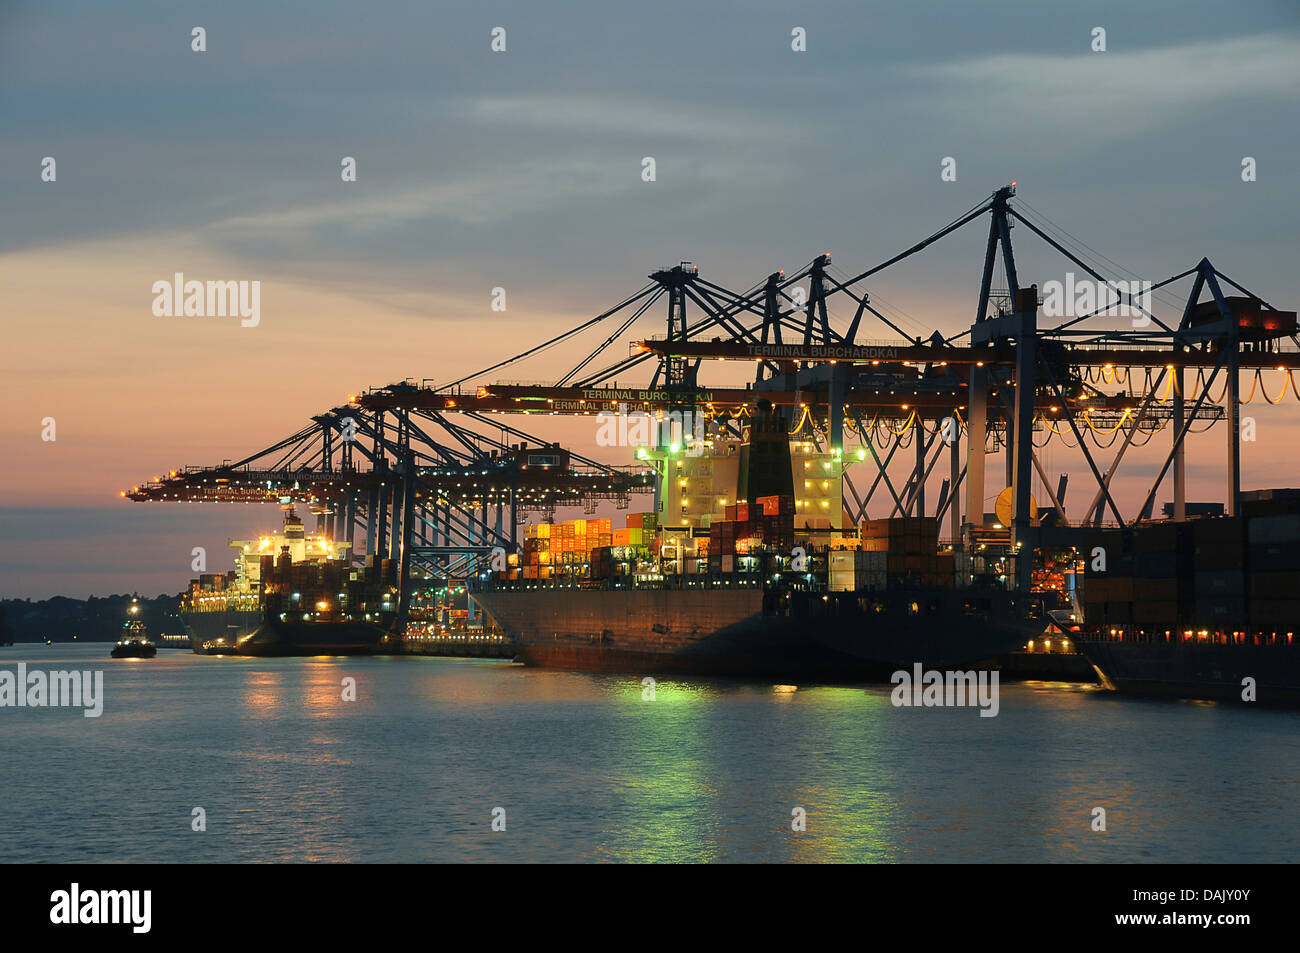 Los buques portacontenedores en el puerto durante la descarga, el anochecer Foto de stock